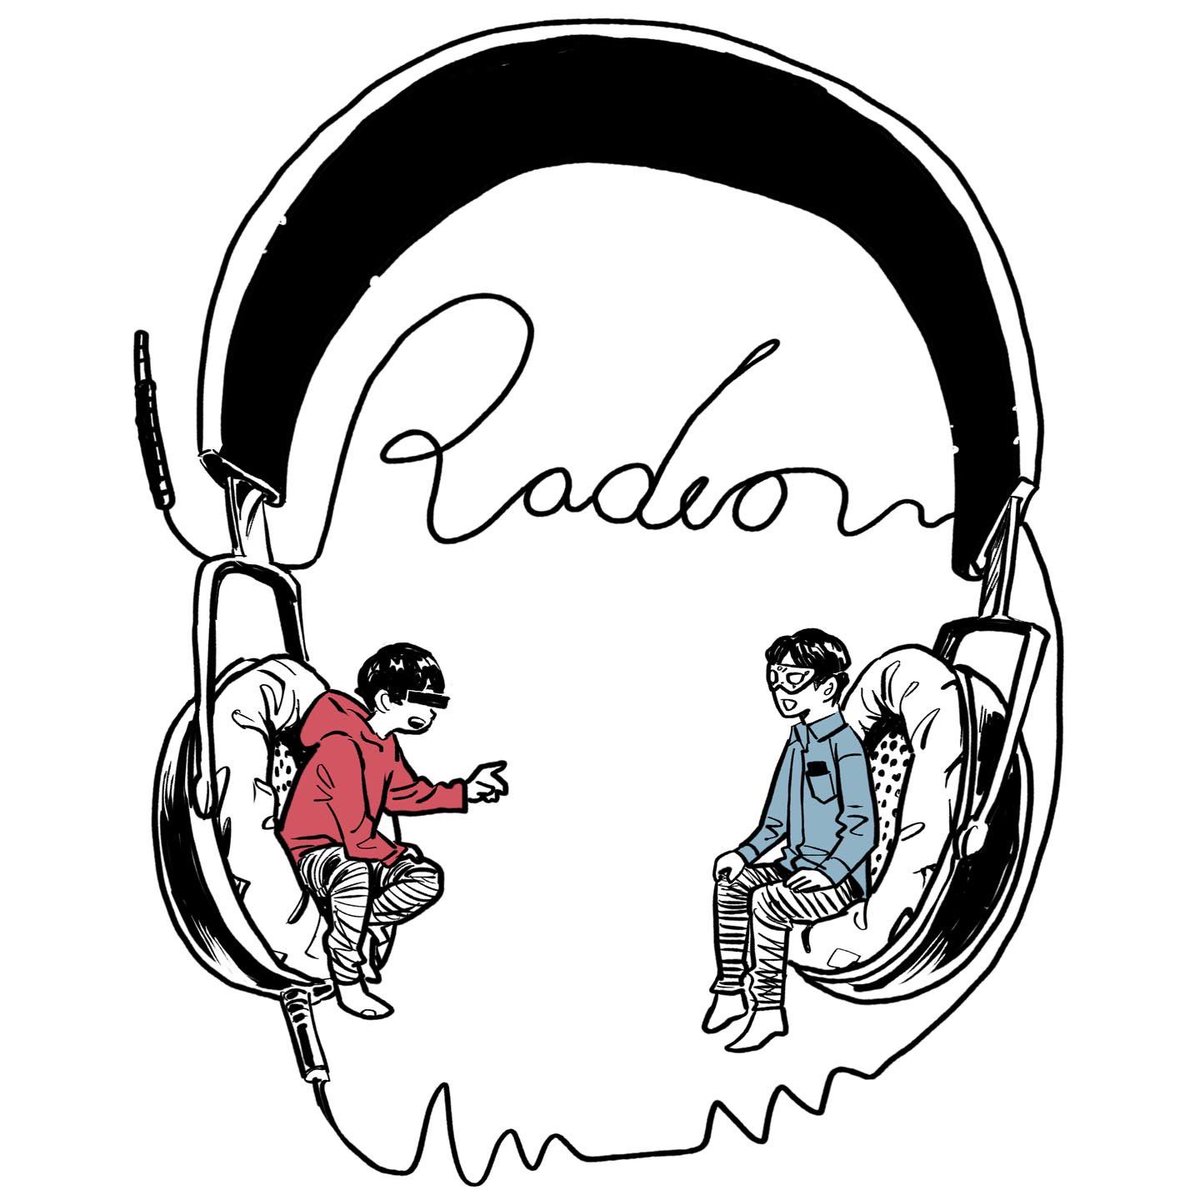 中村光 4 Radio 大好きなネットラジオ 匿名ラジオ のお2人を描きました Inktober Drawing イラスト 匿名ラジオ